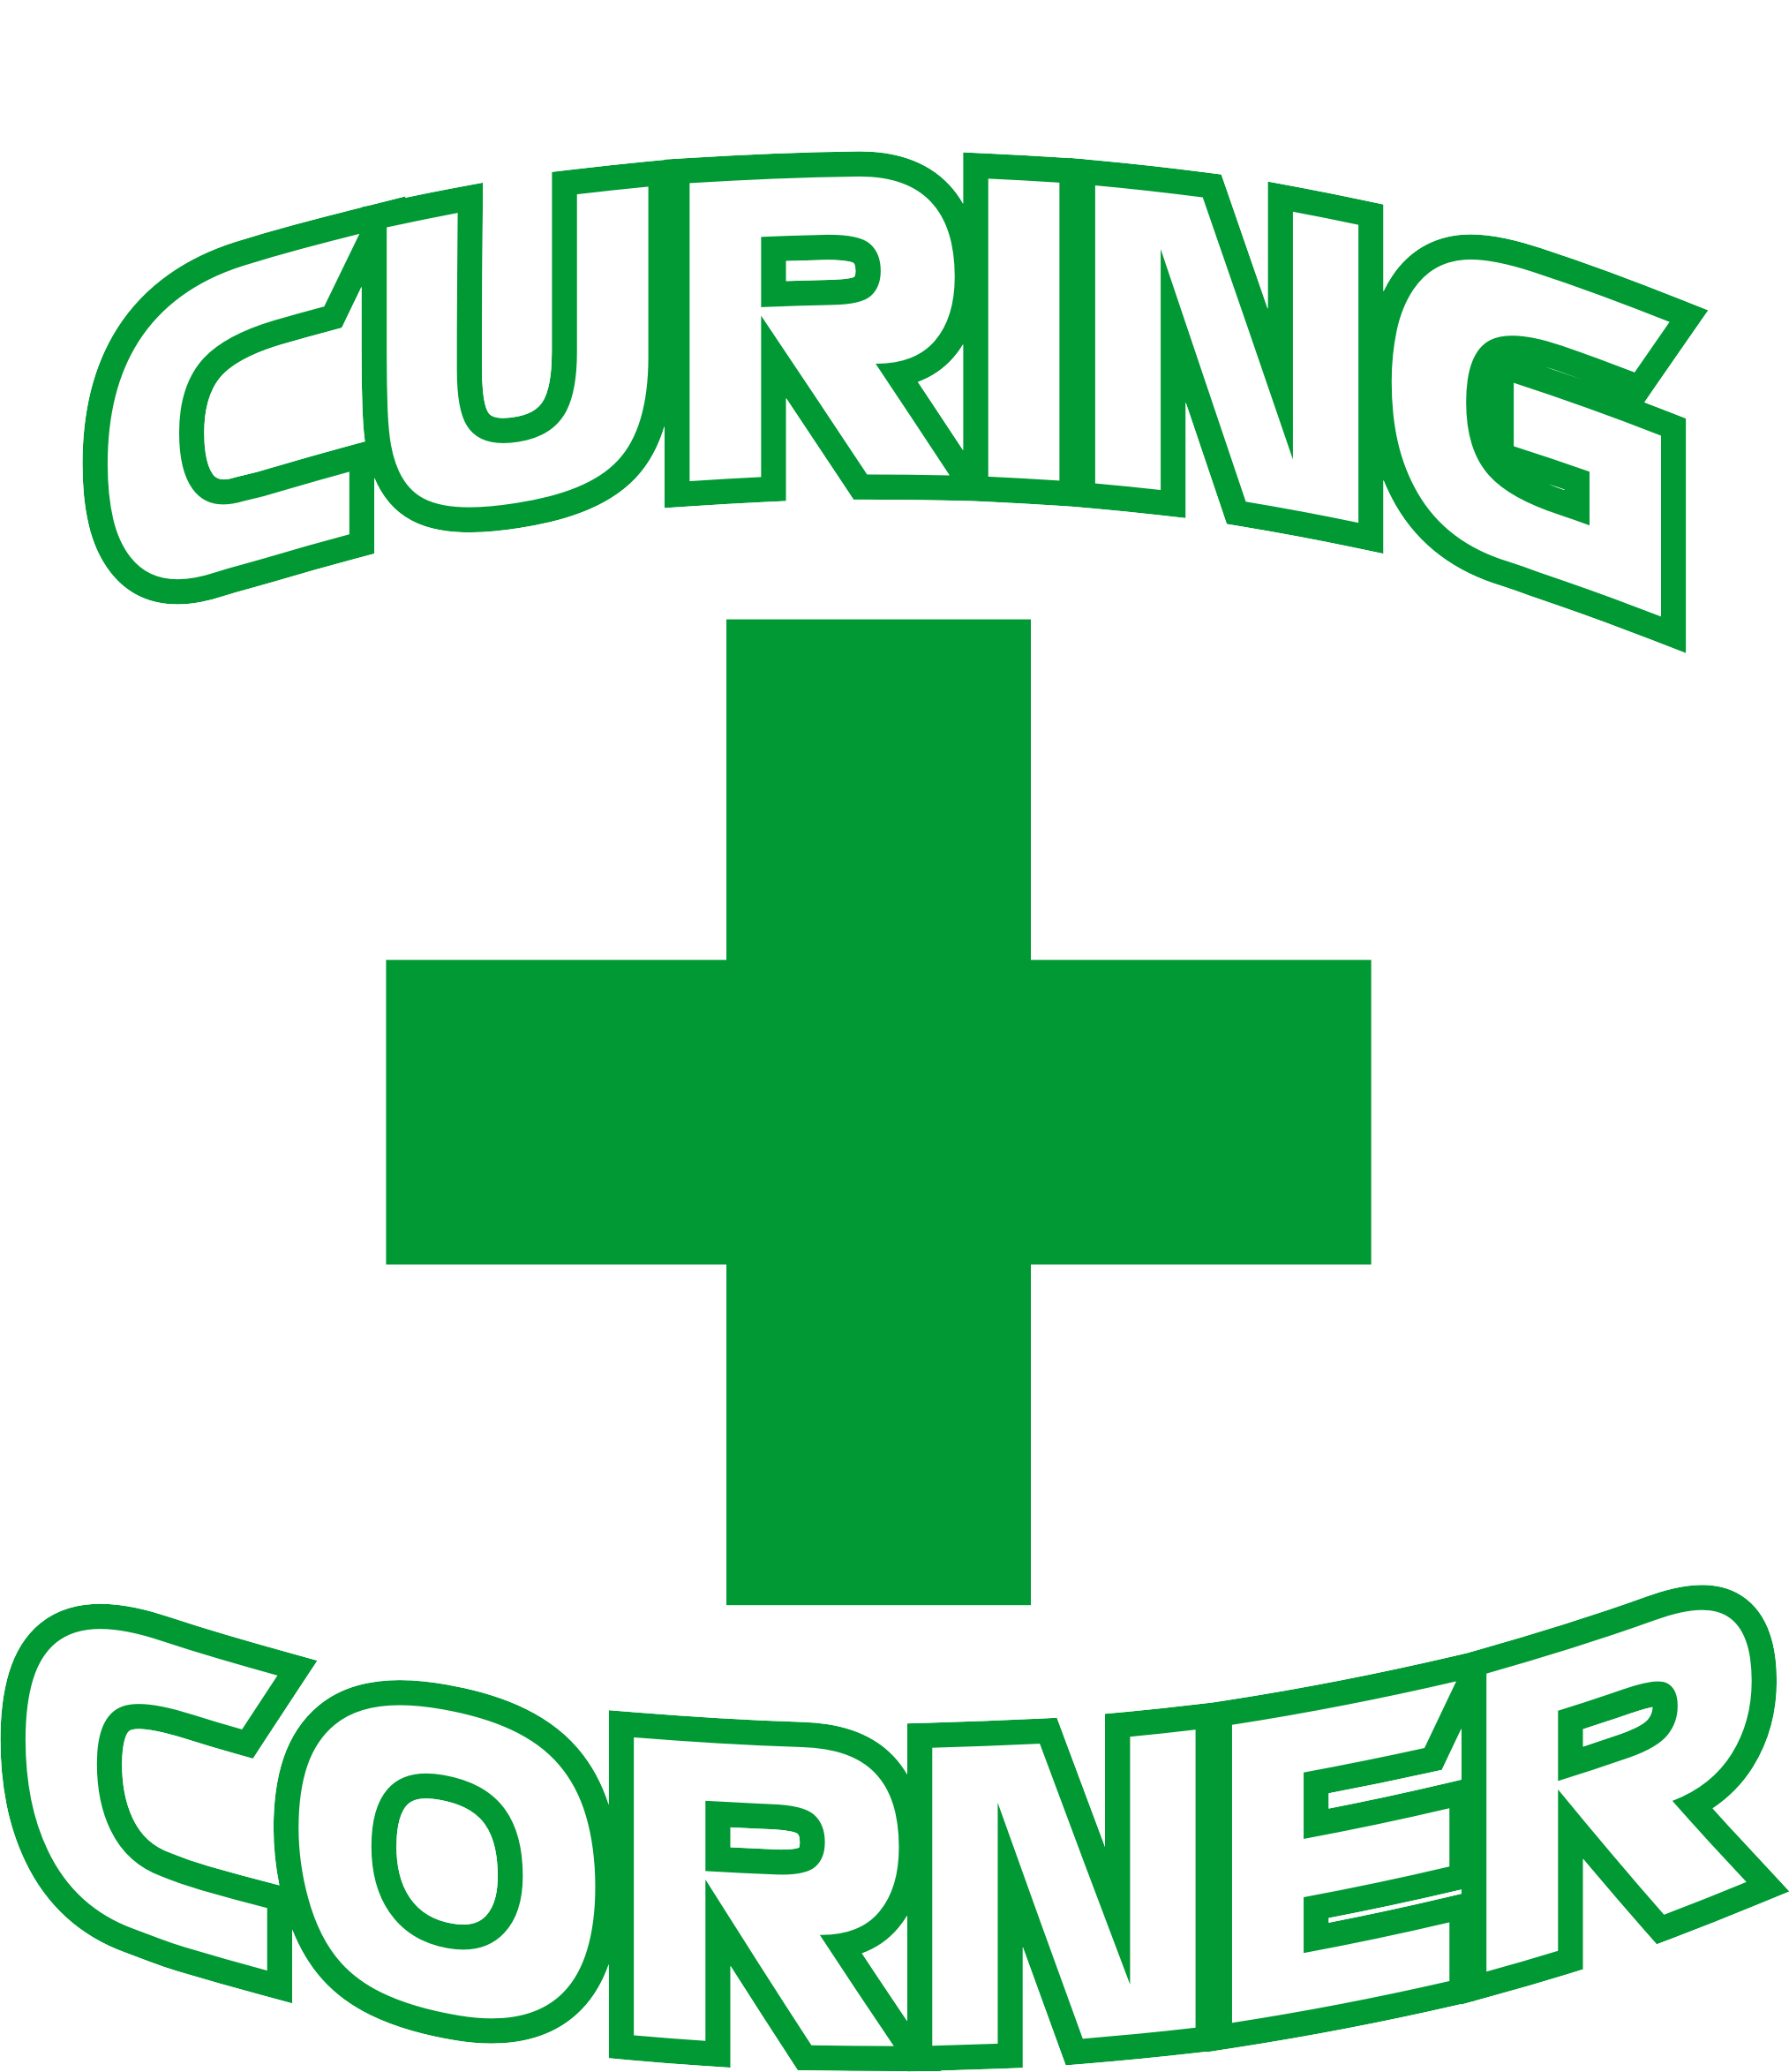 The Curing Corner - Medical Marijuana Doctors - Cannabizme.com